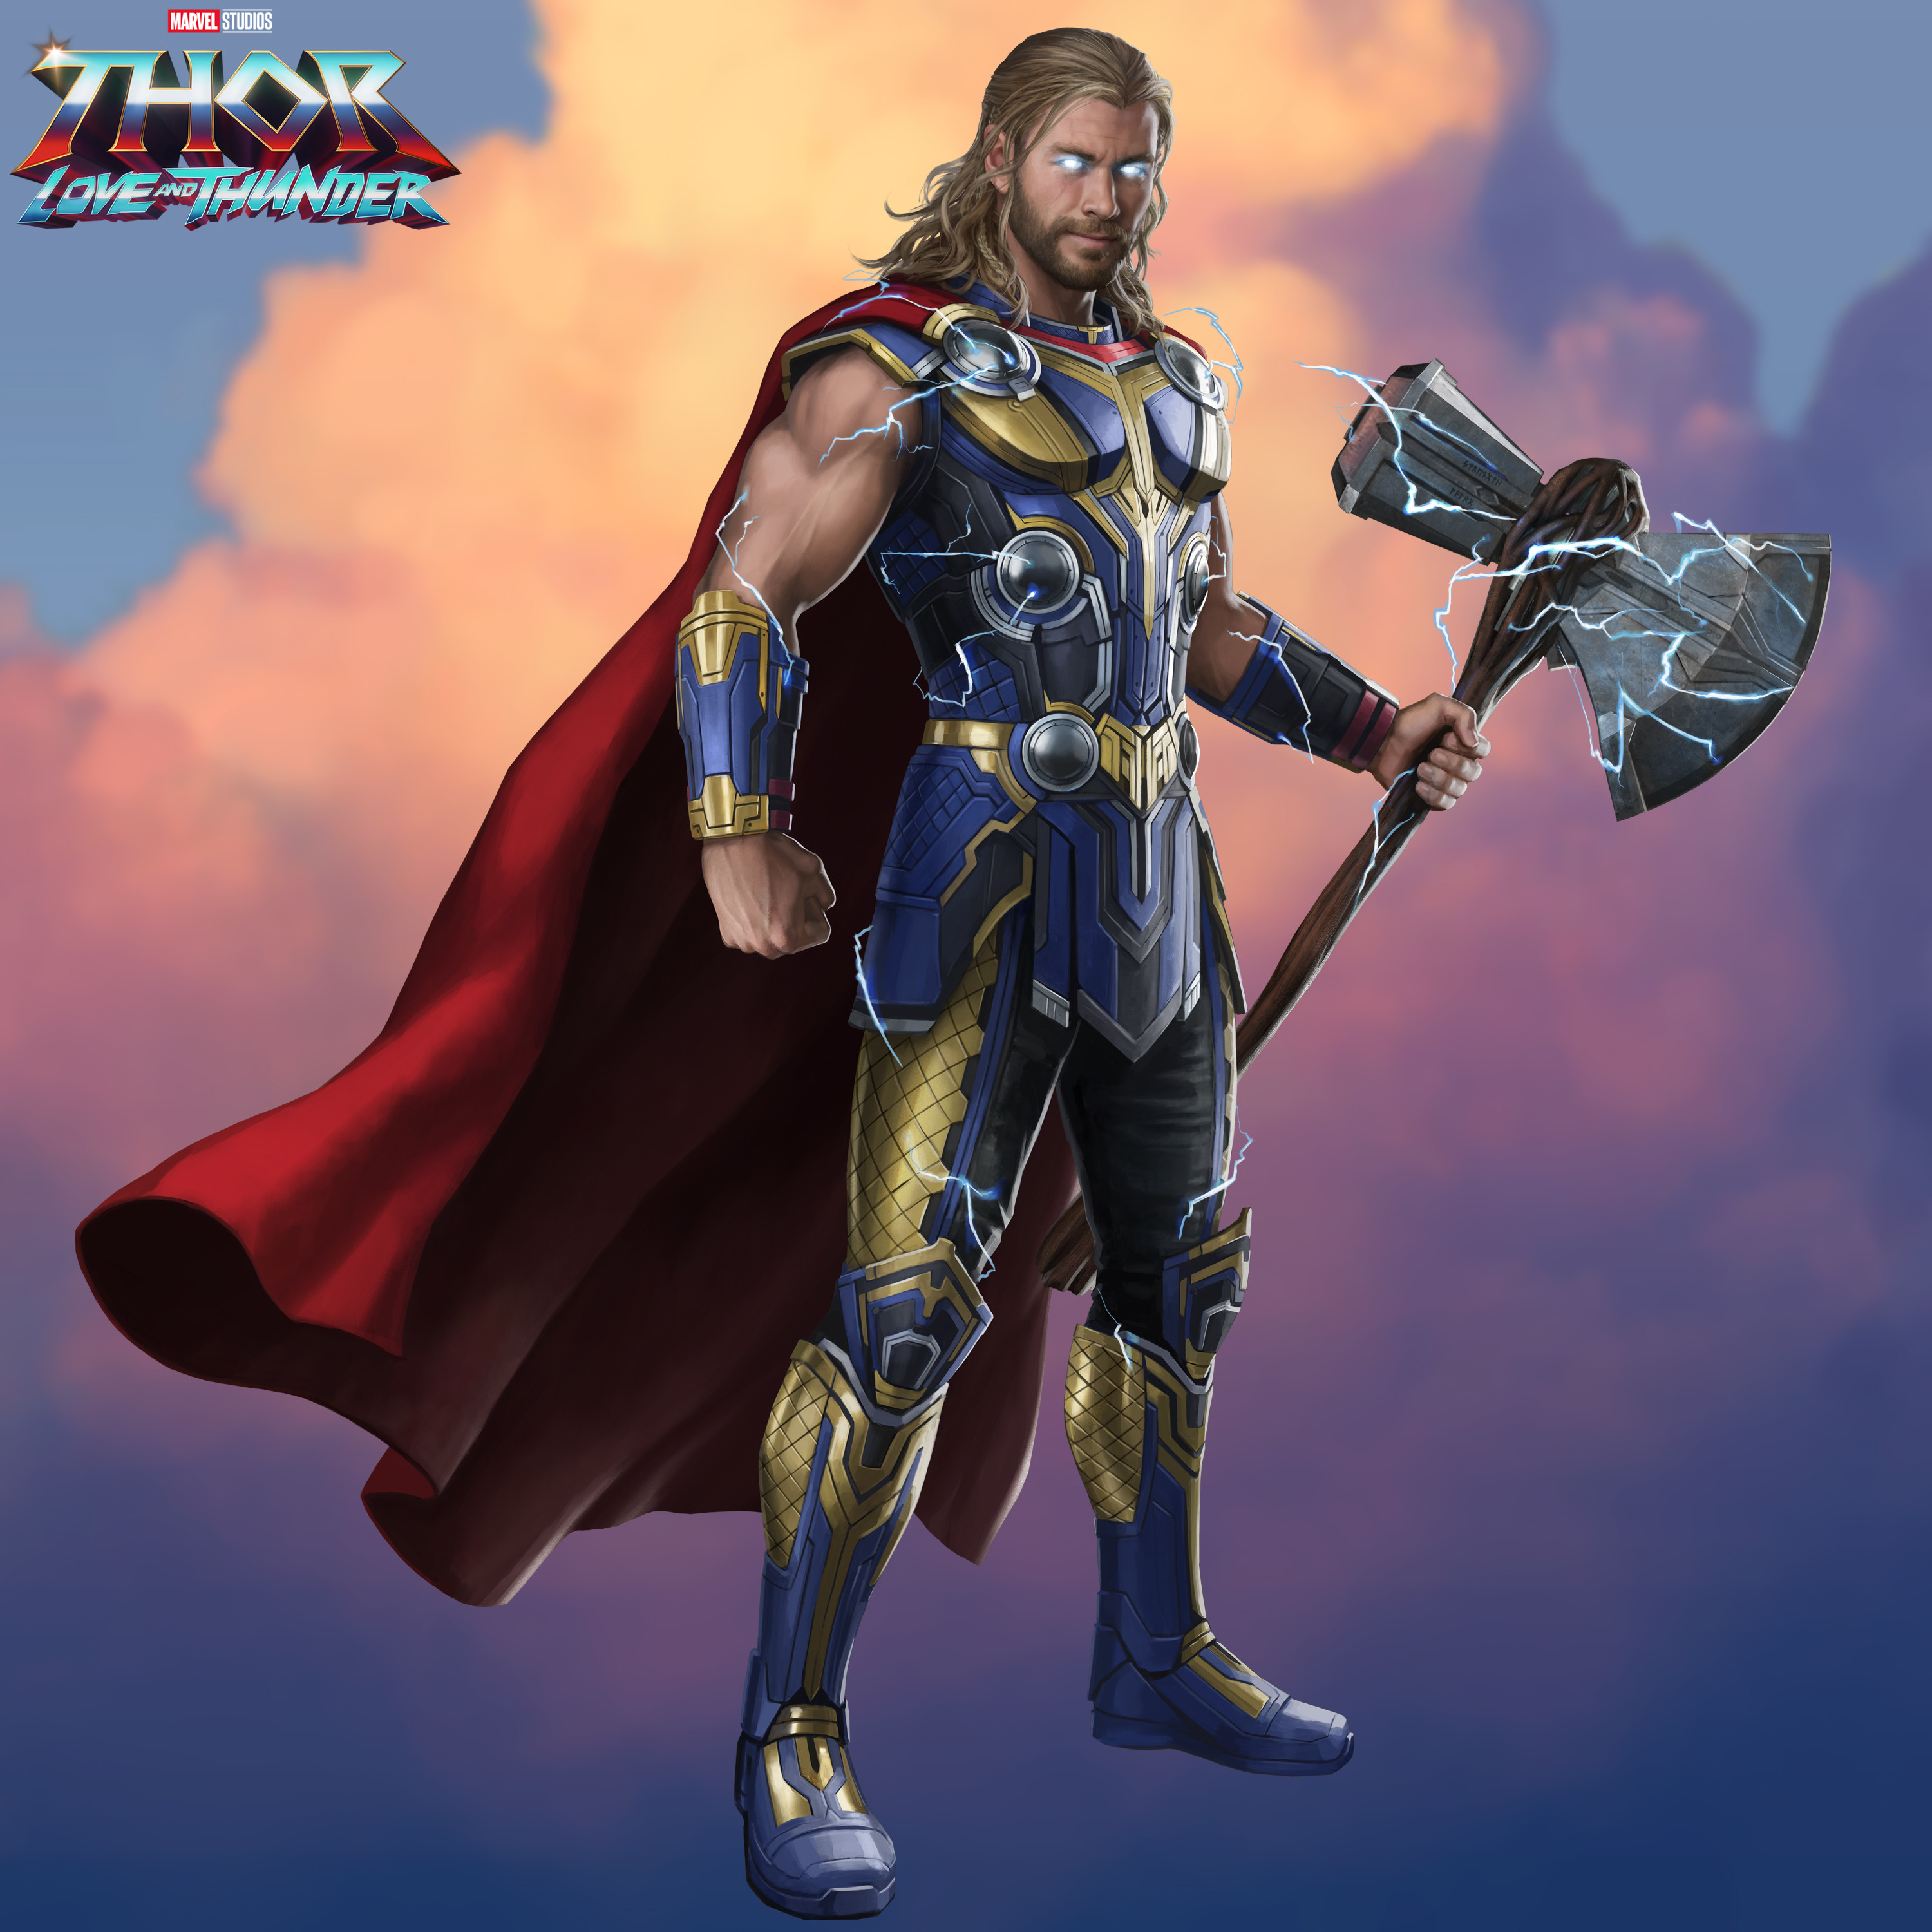 Quem é quem em Thor: Love and Thunder